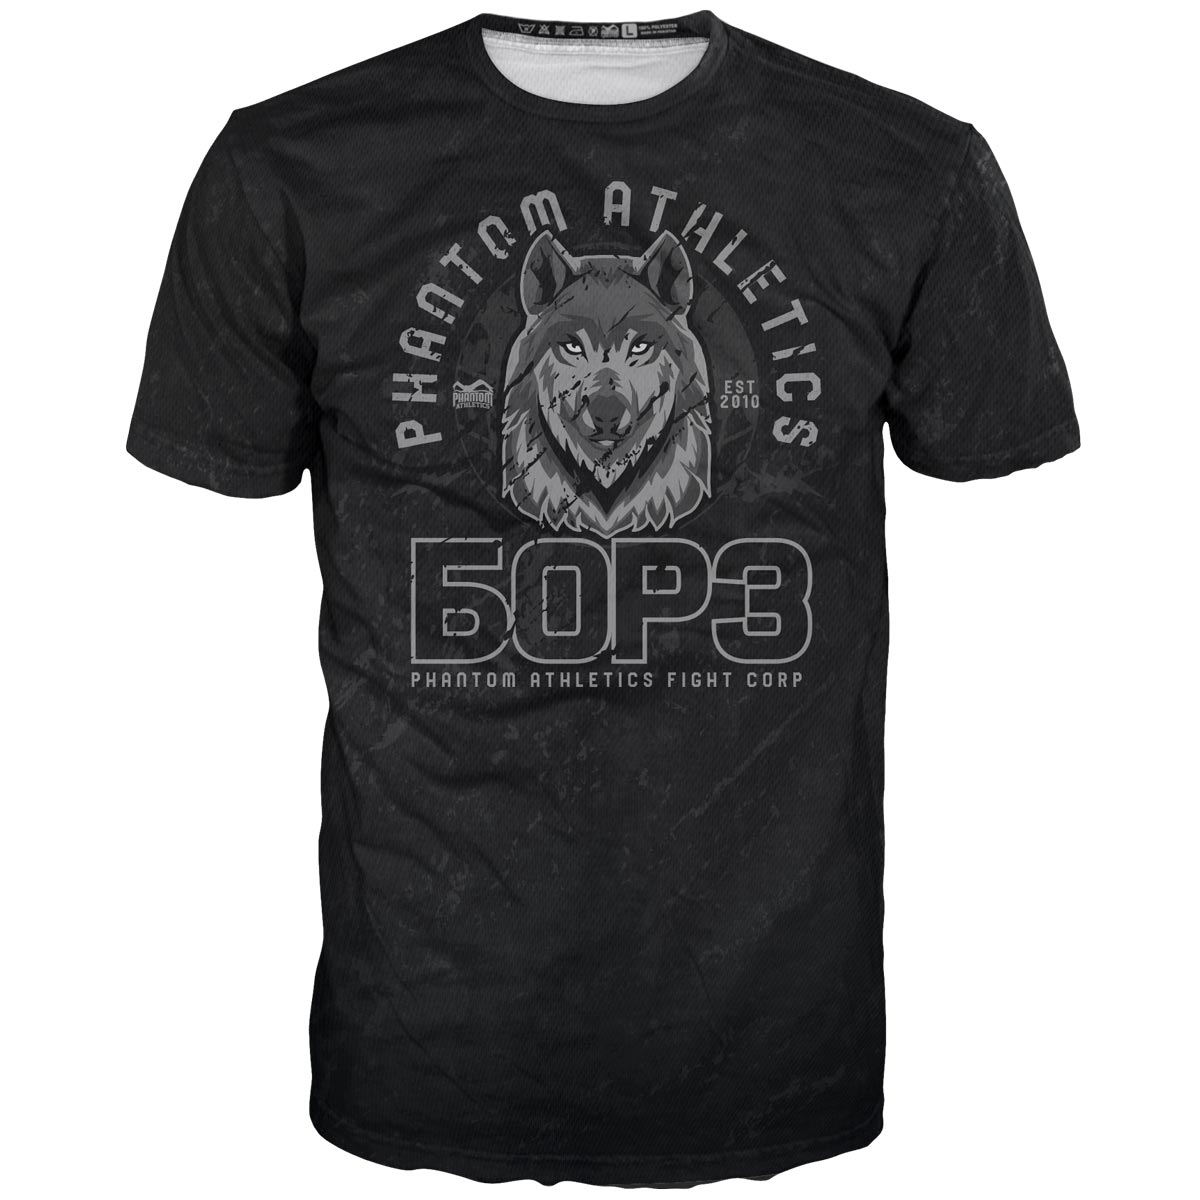 Тениска Phantom BORZ БОРЗ EVO. Идеалната тренировъчна тениска за вашите бойни изкуства. В дизайн на вълк в Чечения с руски надпис WOLF. Перфектен за MMA, муай тай, кикбокс, борба и граплинг.